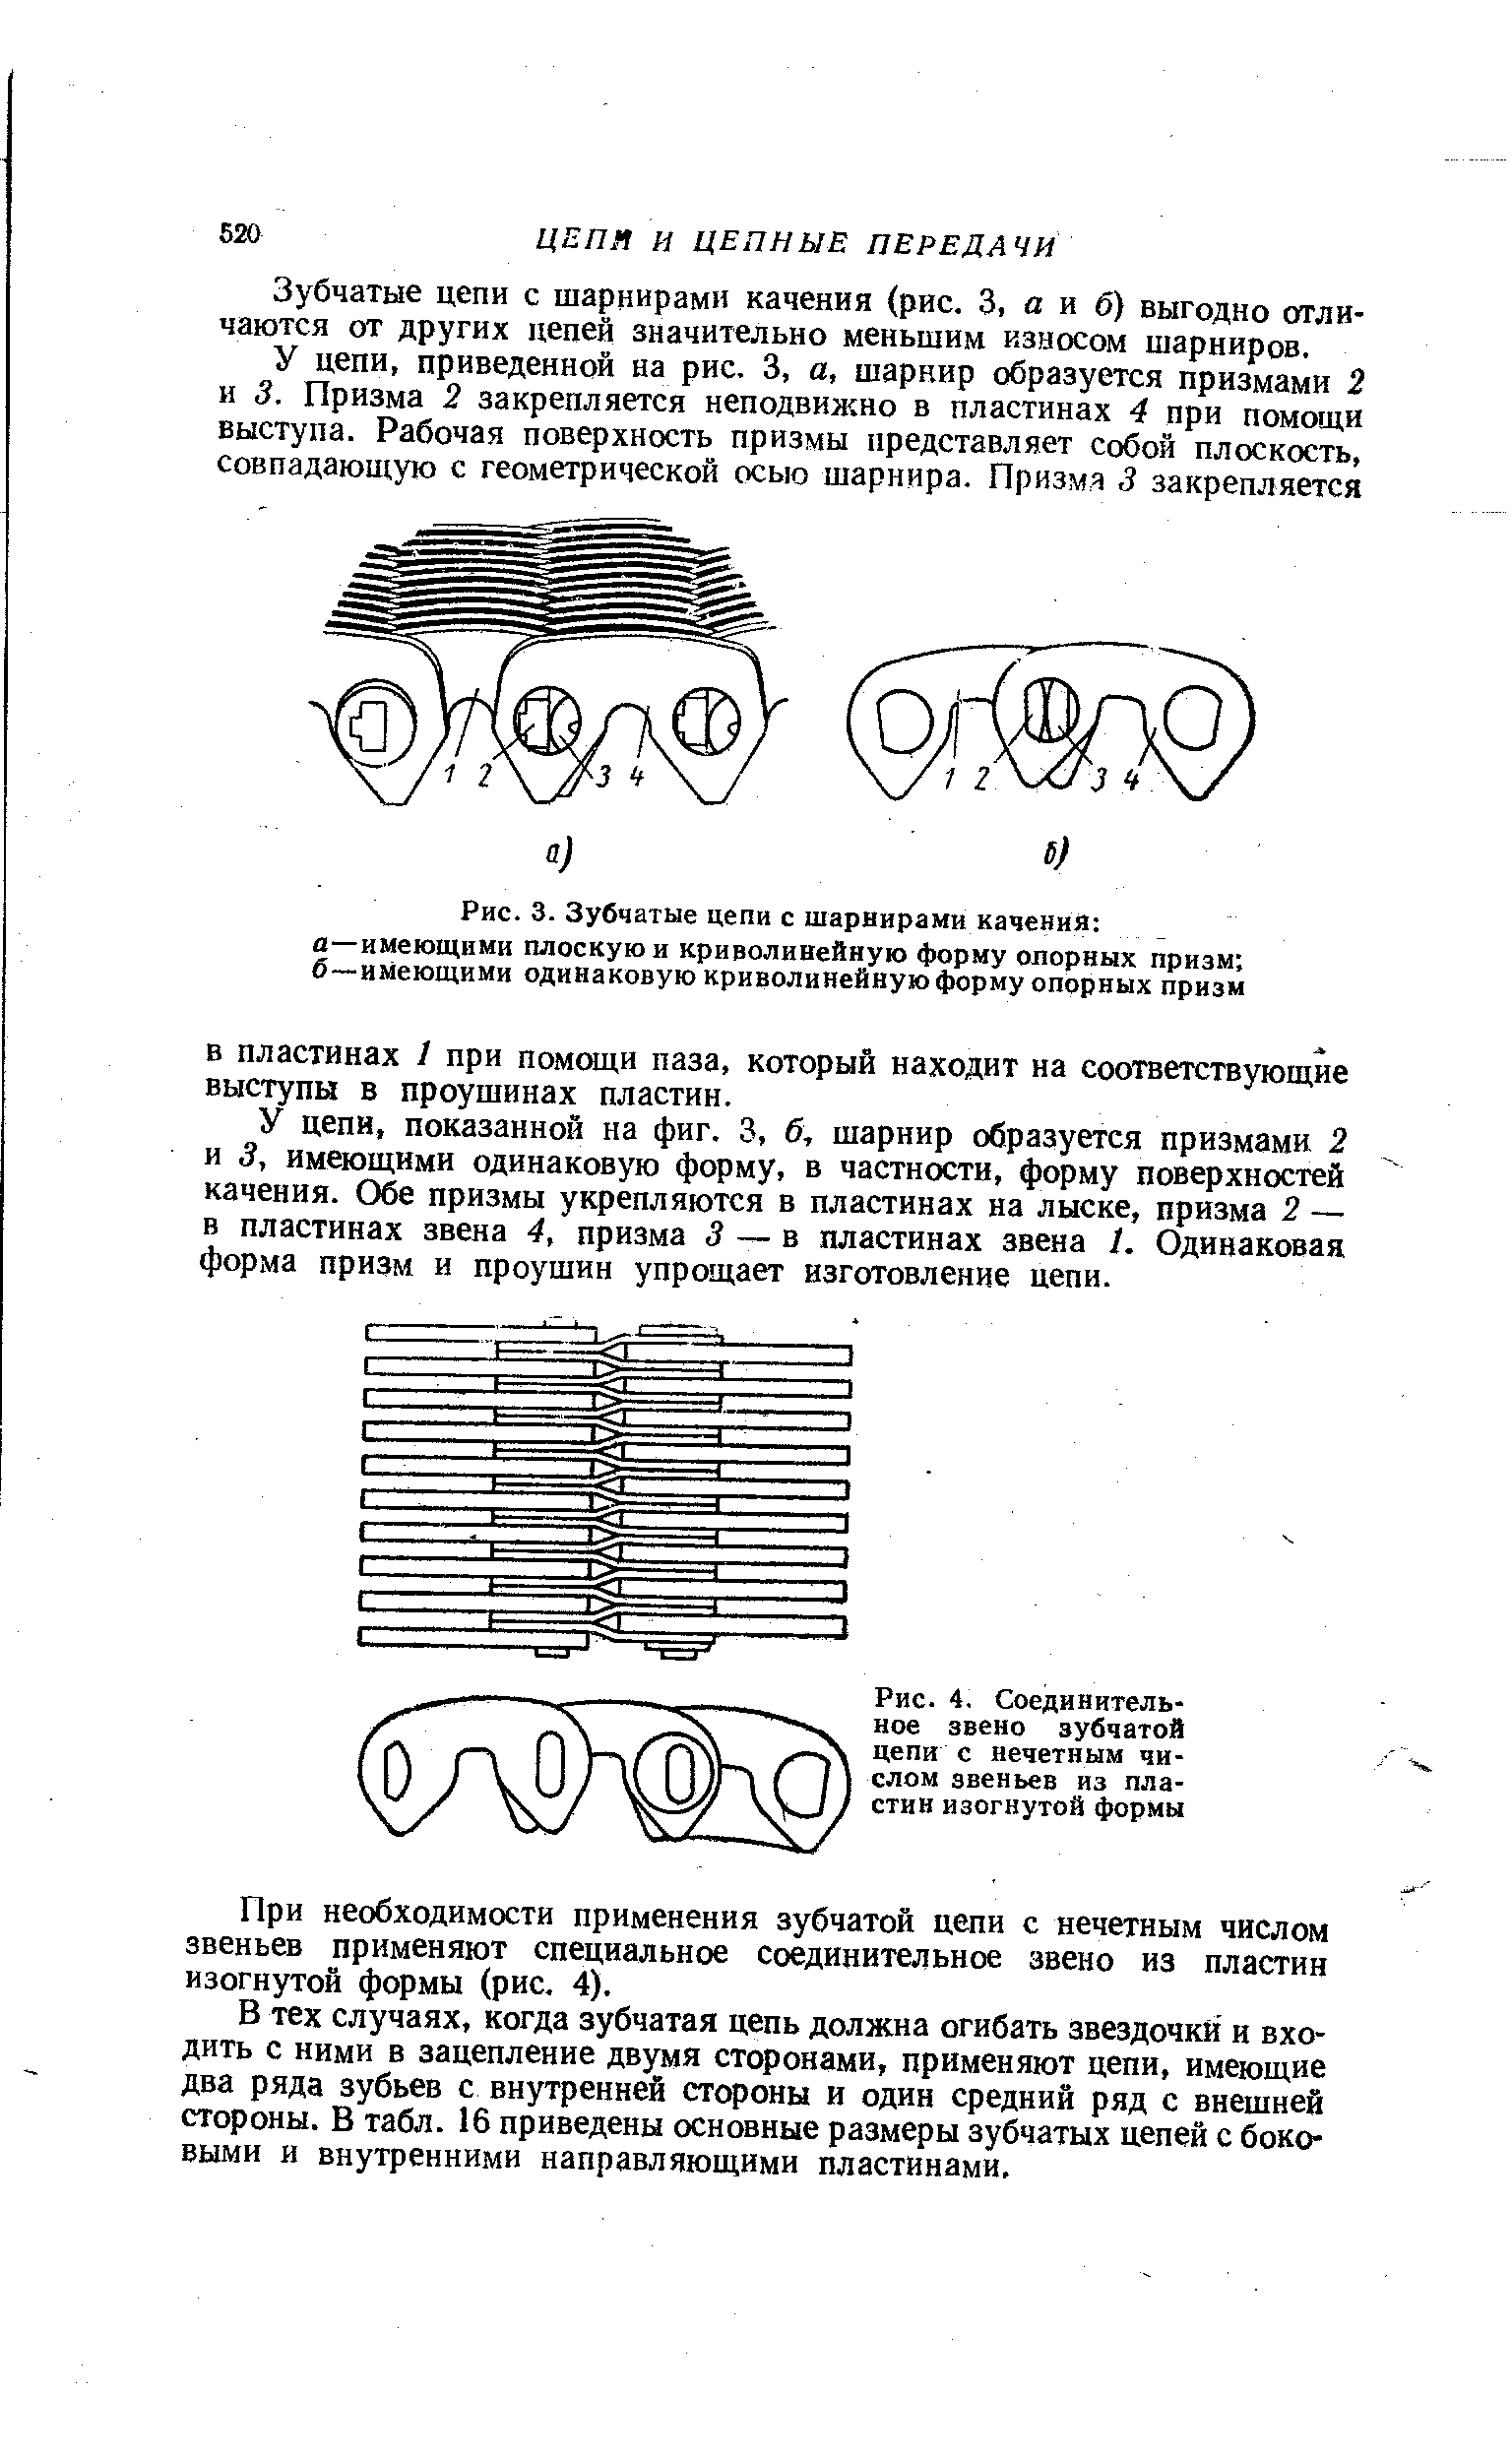 Рис. 4, Соединительное звено зубчатой цепи с нечетным числом звеньев из пластин изогнутой формы
